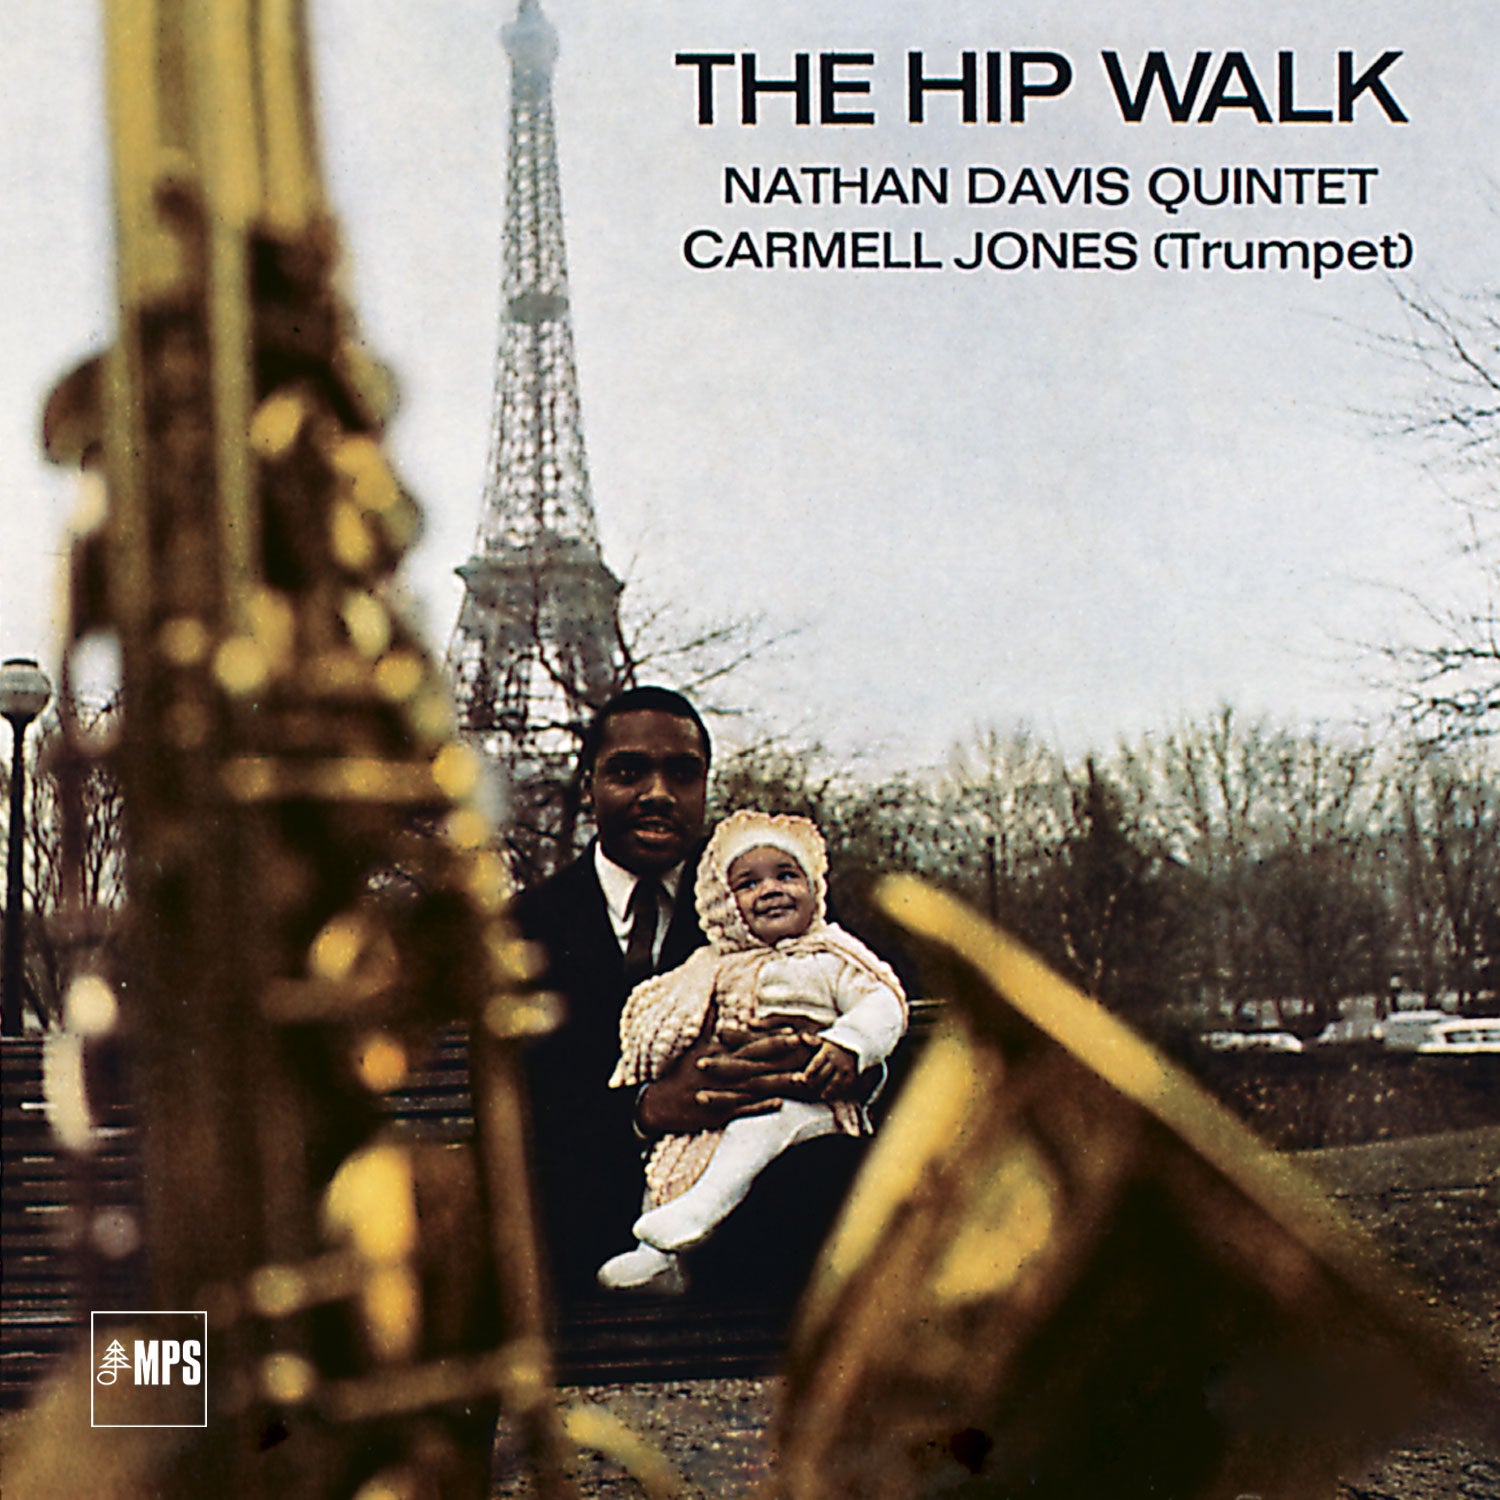 Nathan Davis Quintet Featuring Carmell Jones ~ The Hip Walk